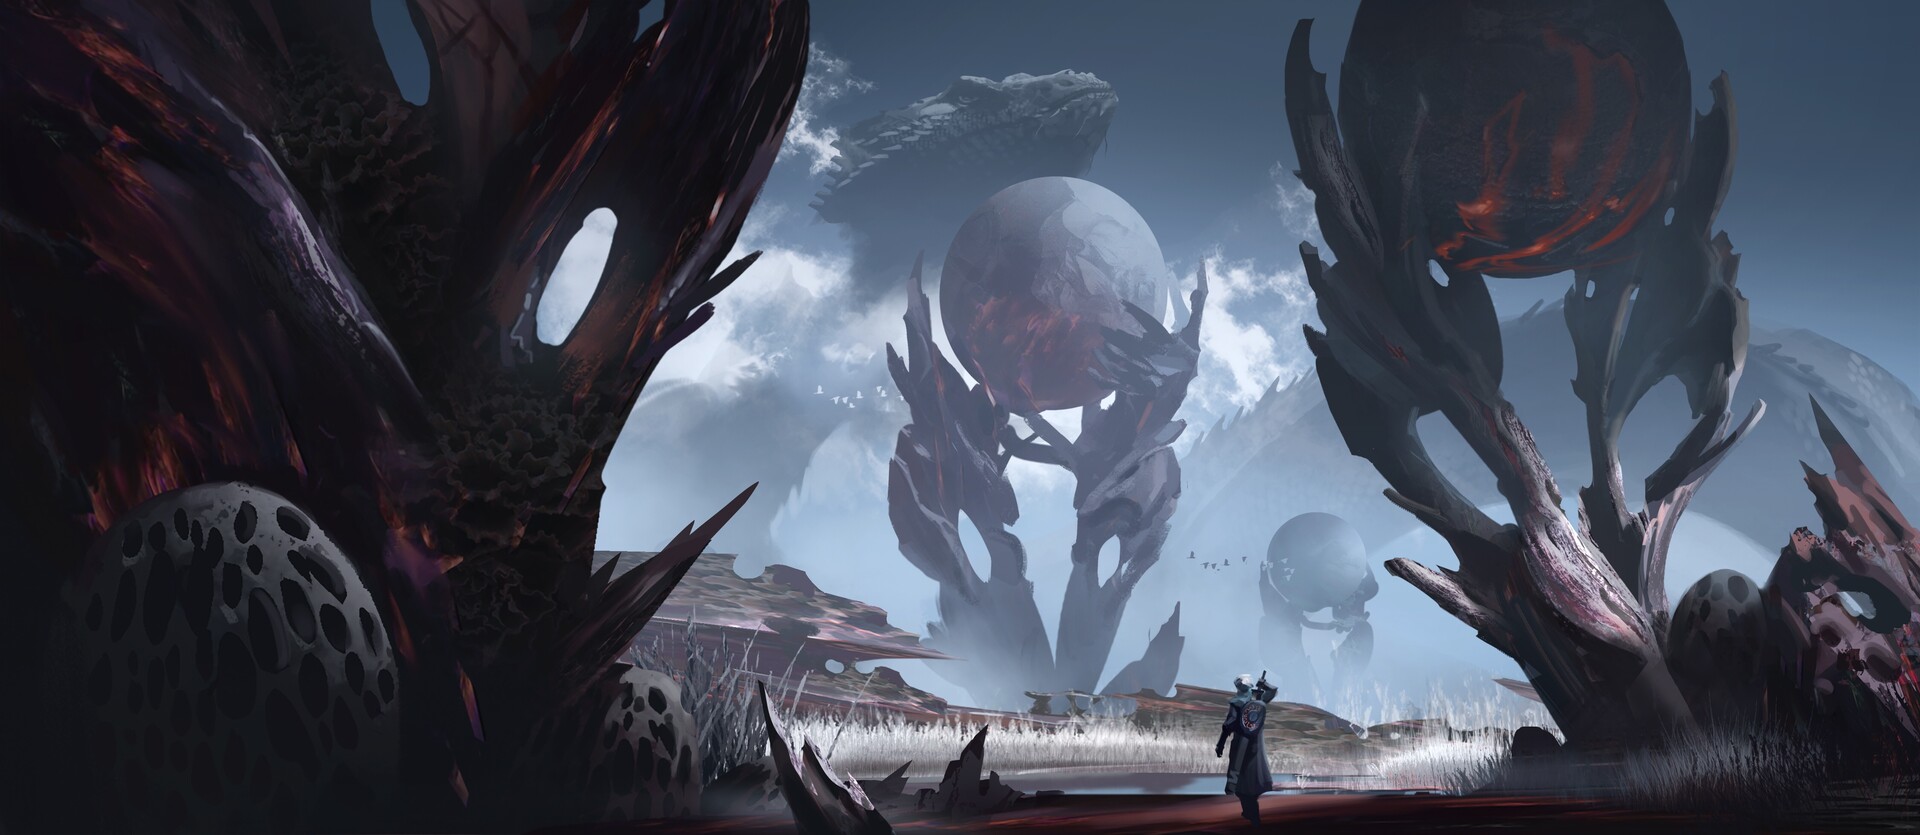 ZQ Digital Art Surreal Alien Planet Giant Dragon Landscape 1920x835